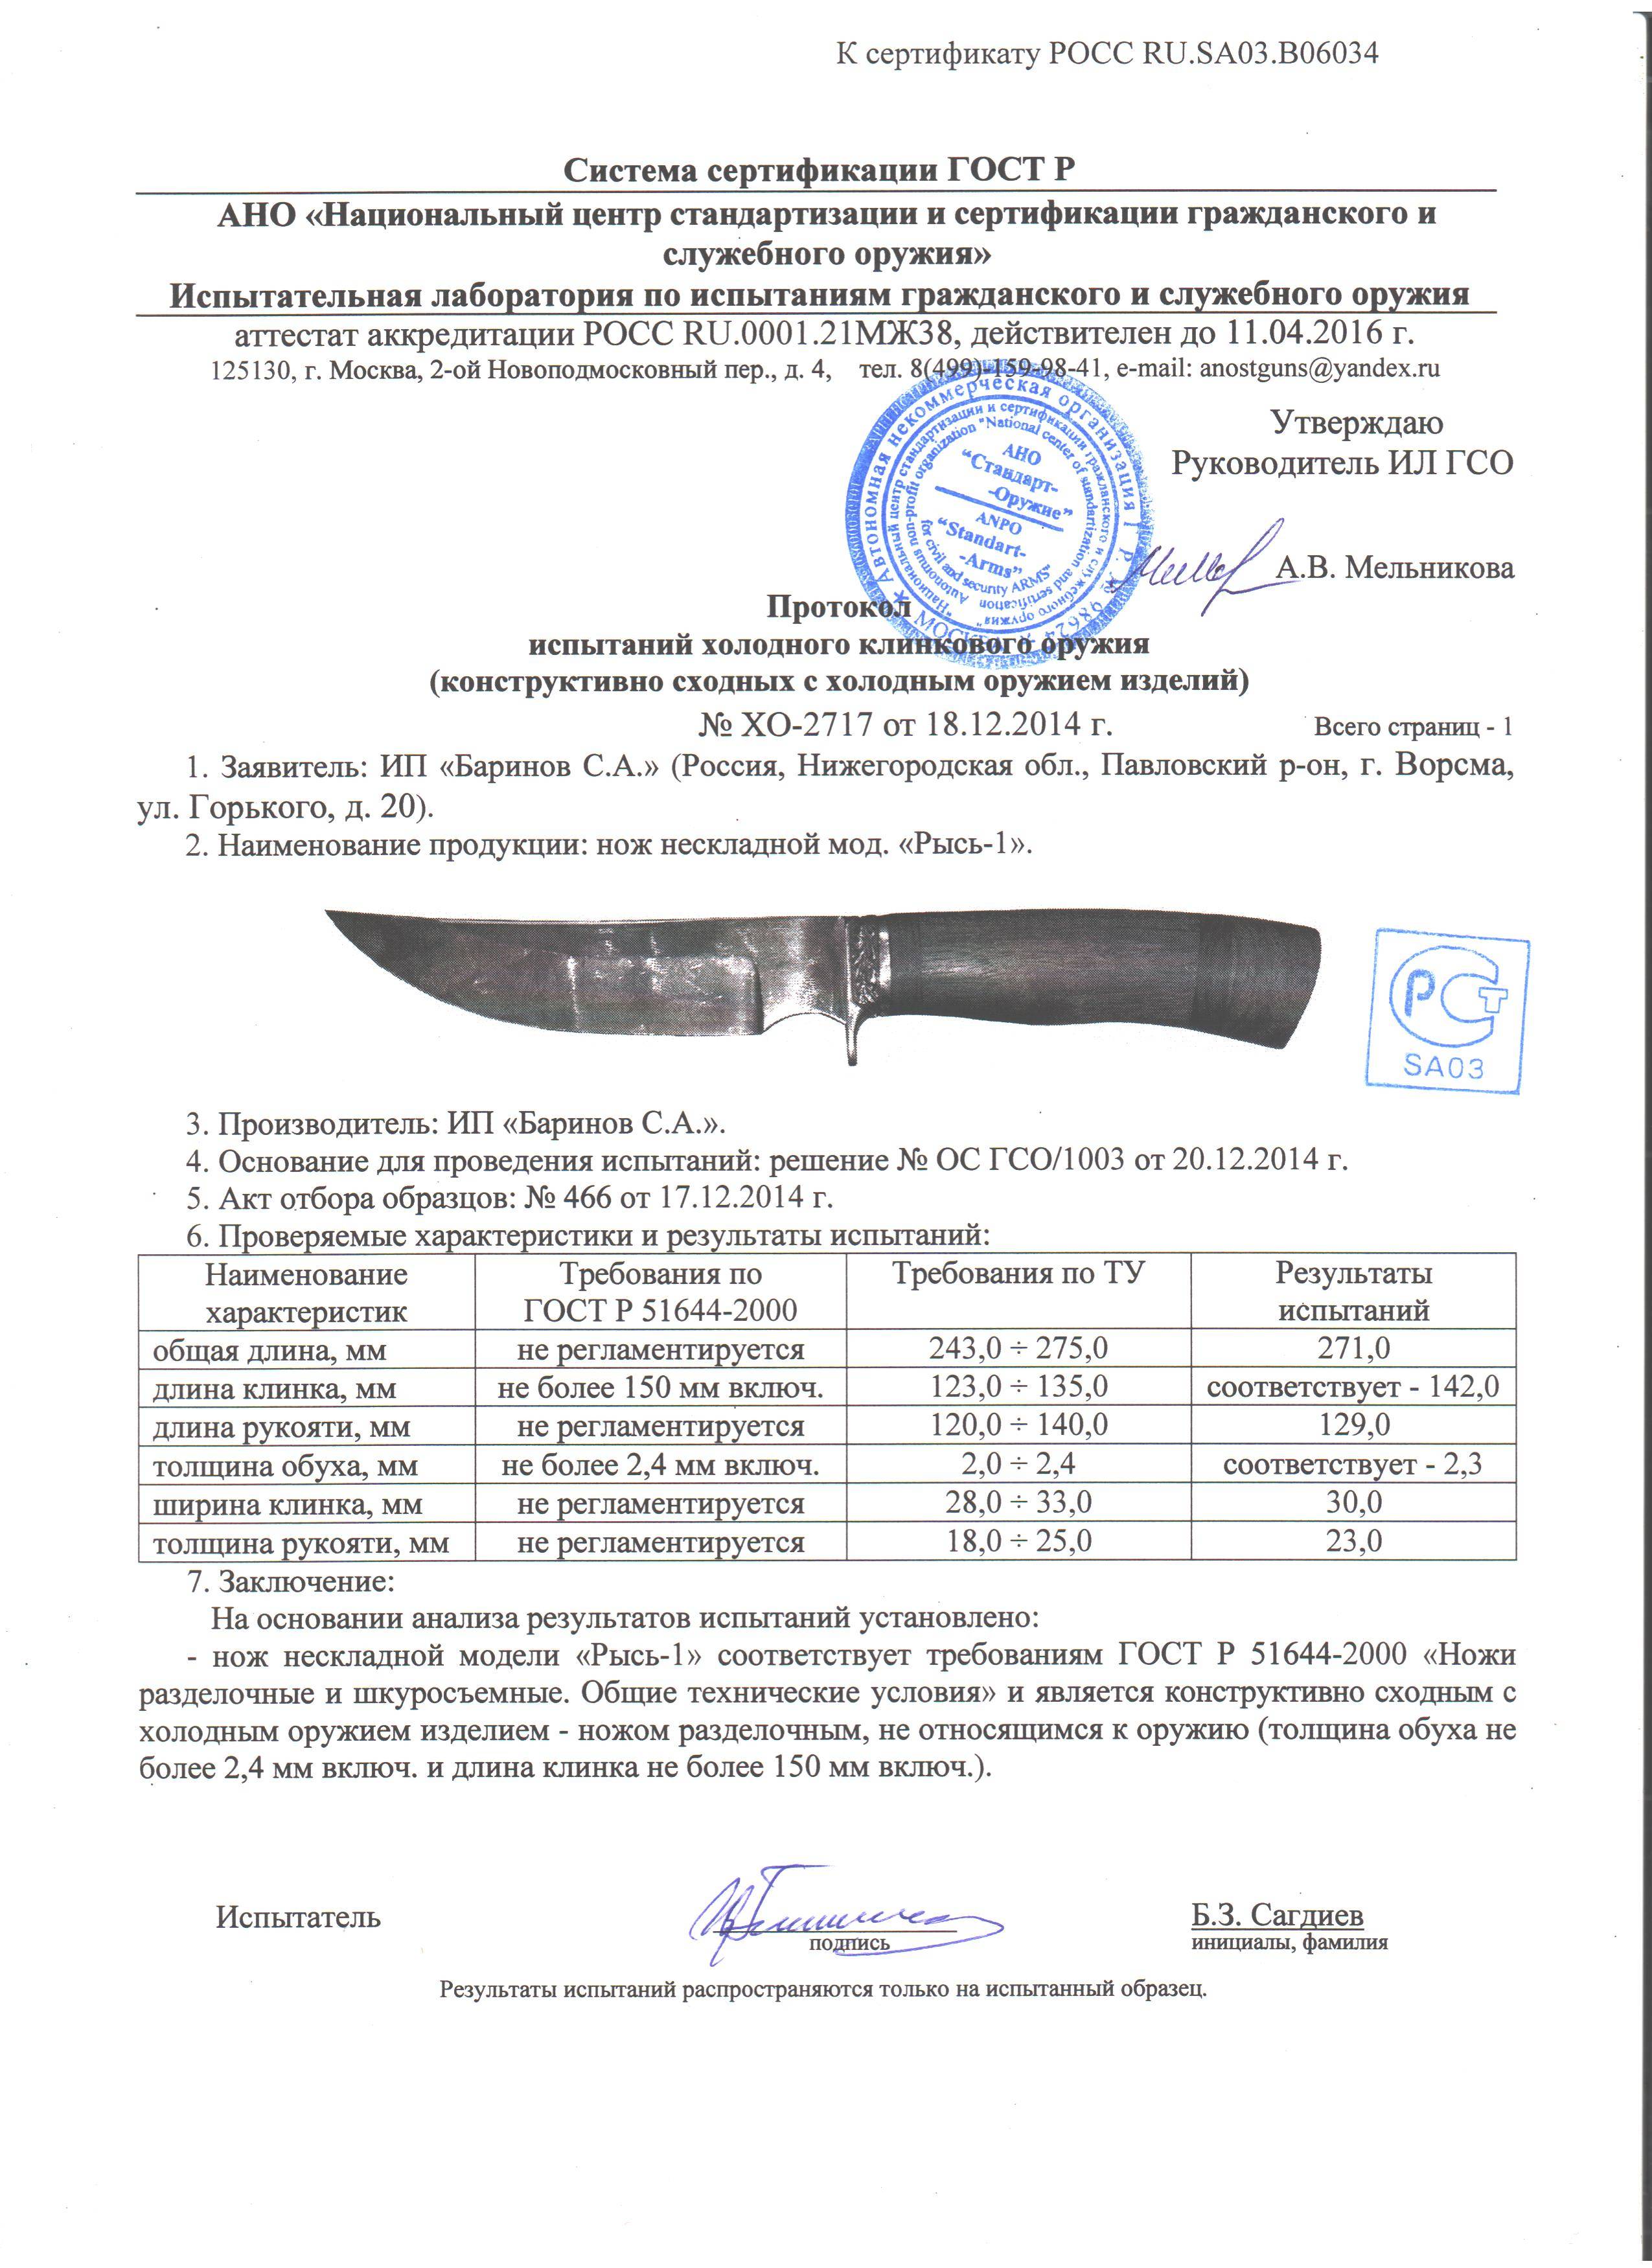 Справочник ножевых сталей - криминалисты.ру